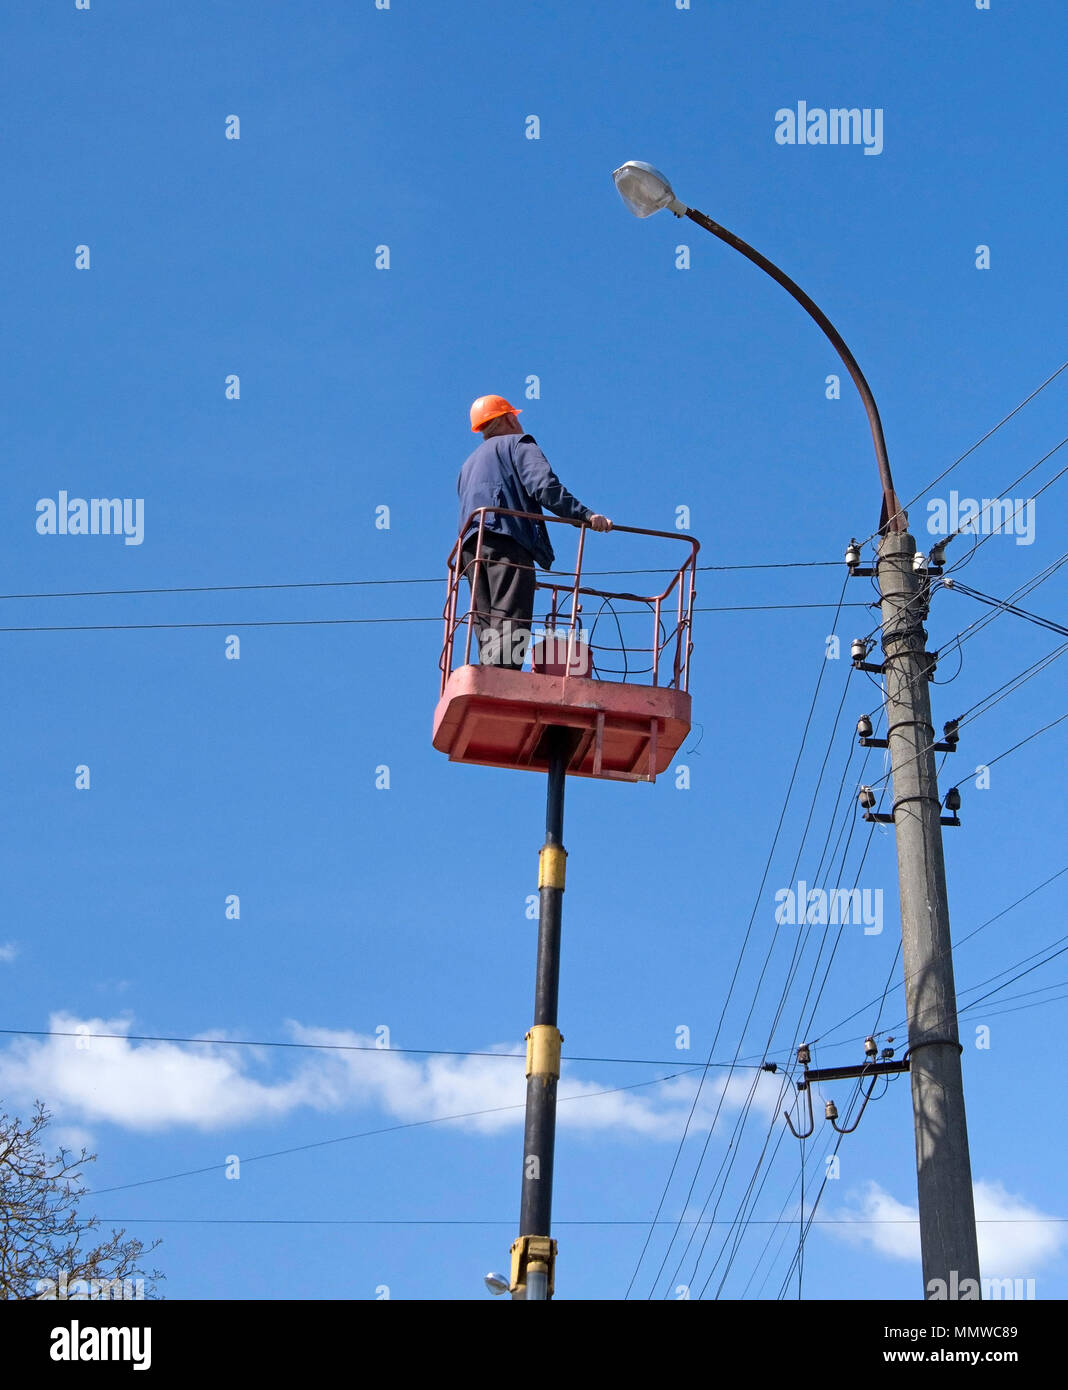 Electricista subir instalando nuevos trabajos sobre la energía eléctrica lámpara de la calle polo de hormigón en blue sky Foto de stock